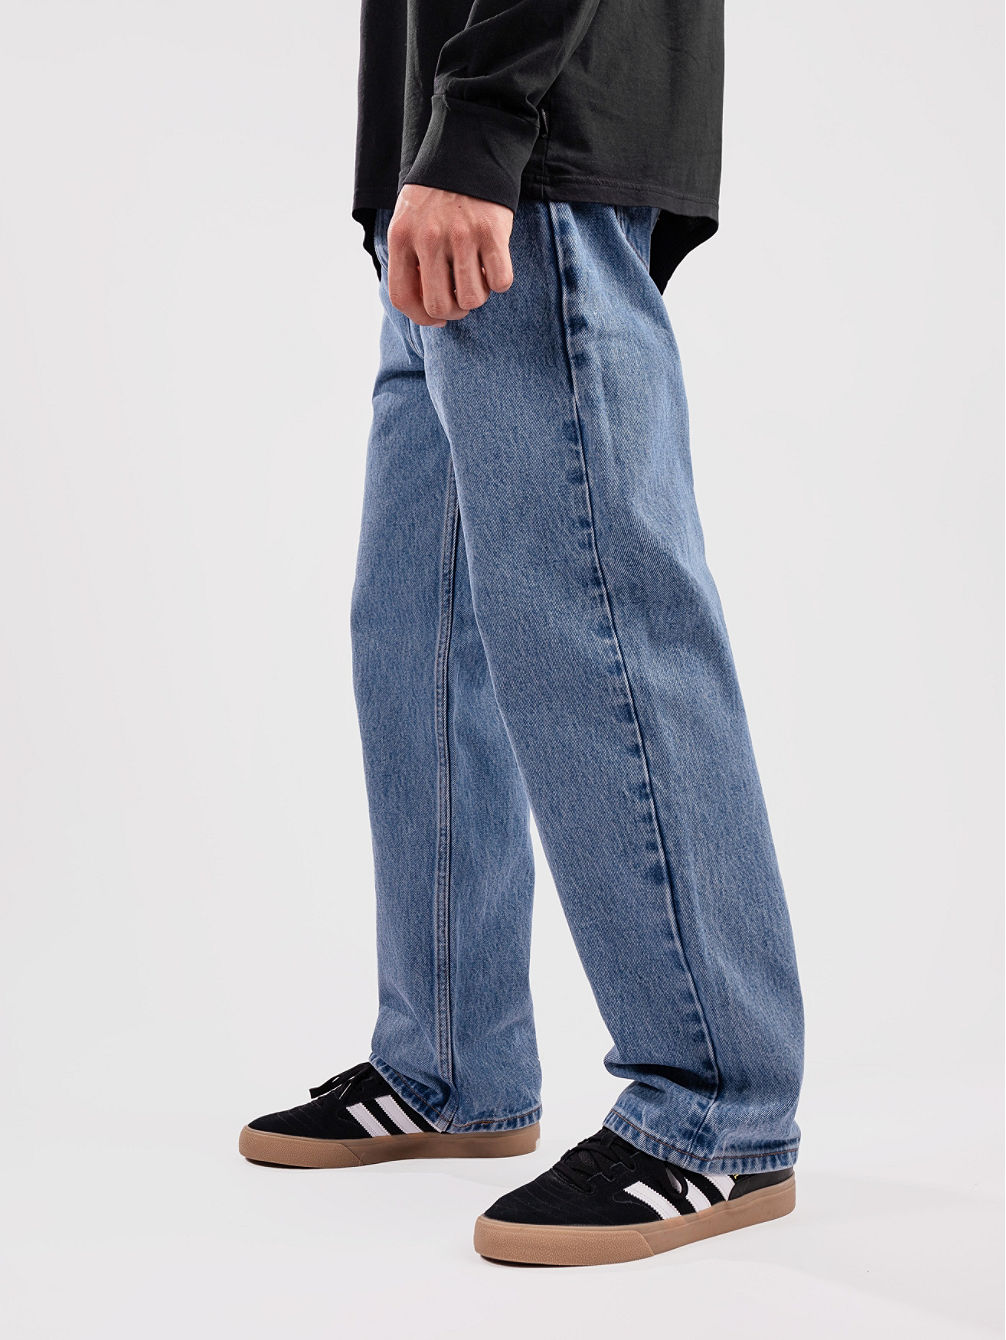 Skate Baggy 5 Pocket Jeans